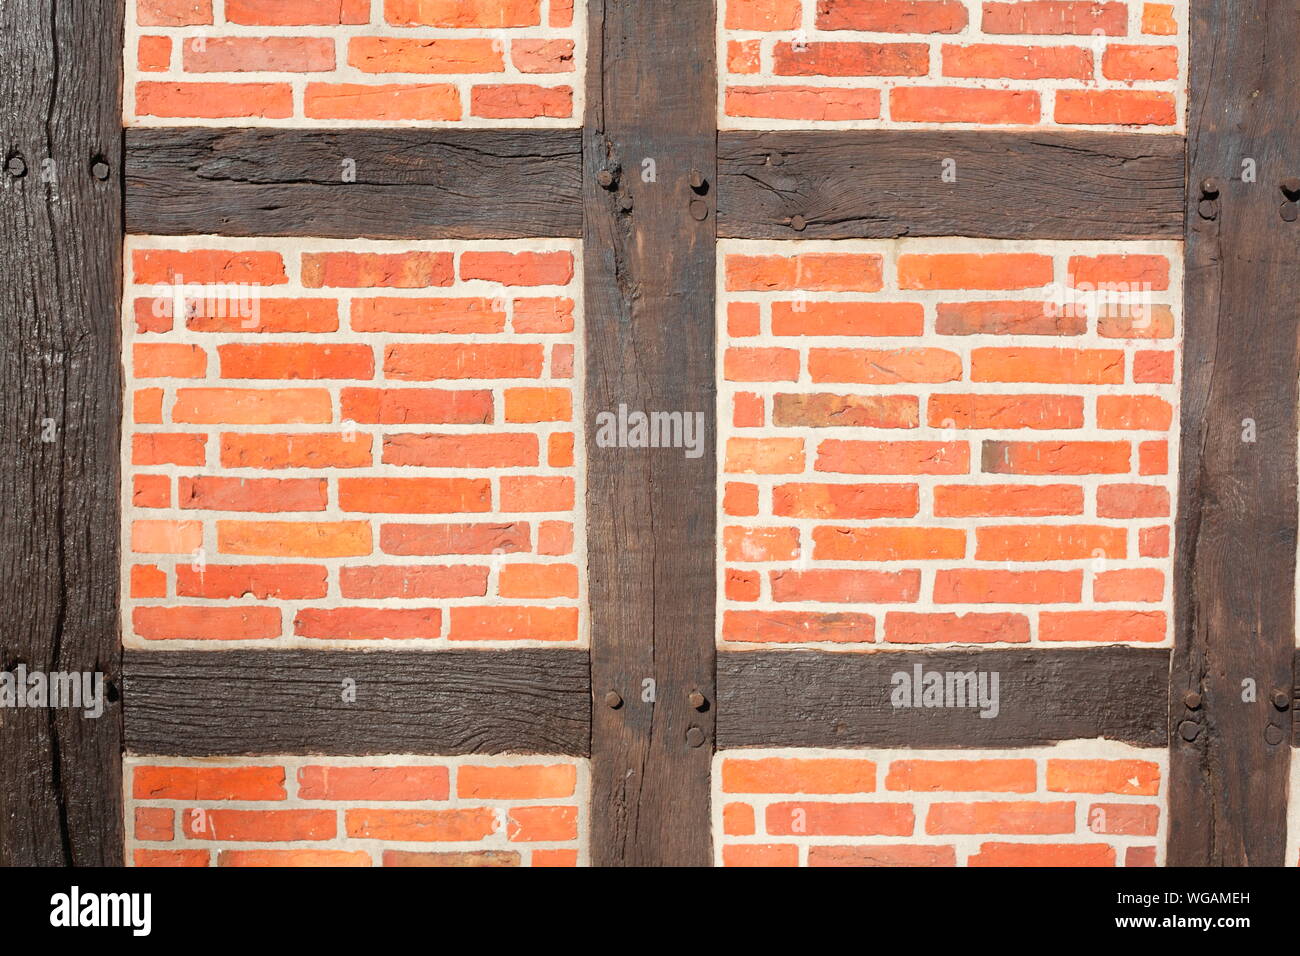 Ziegelmauer mit Fachwerk-Balken, Deutschland, Europa Stock Photo